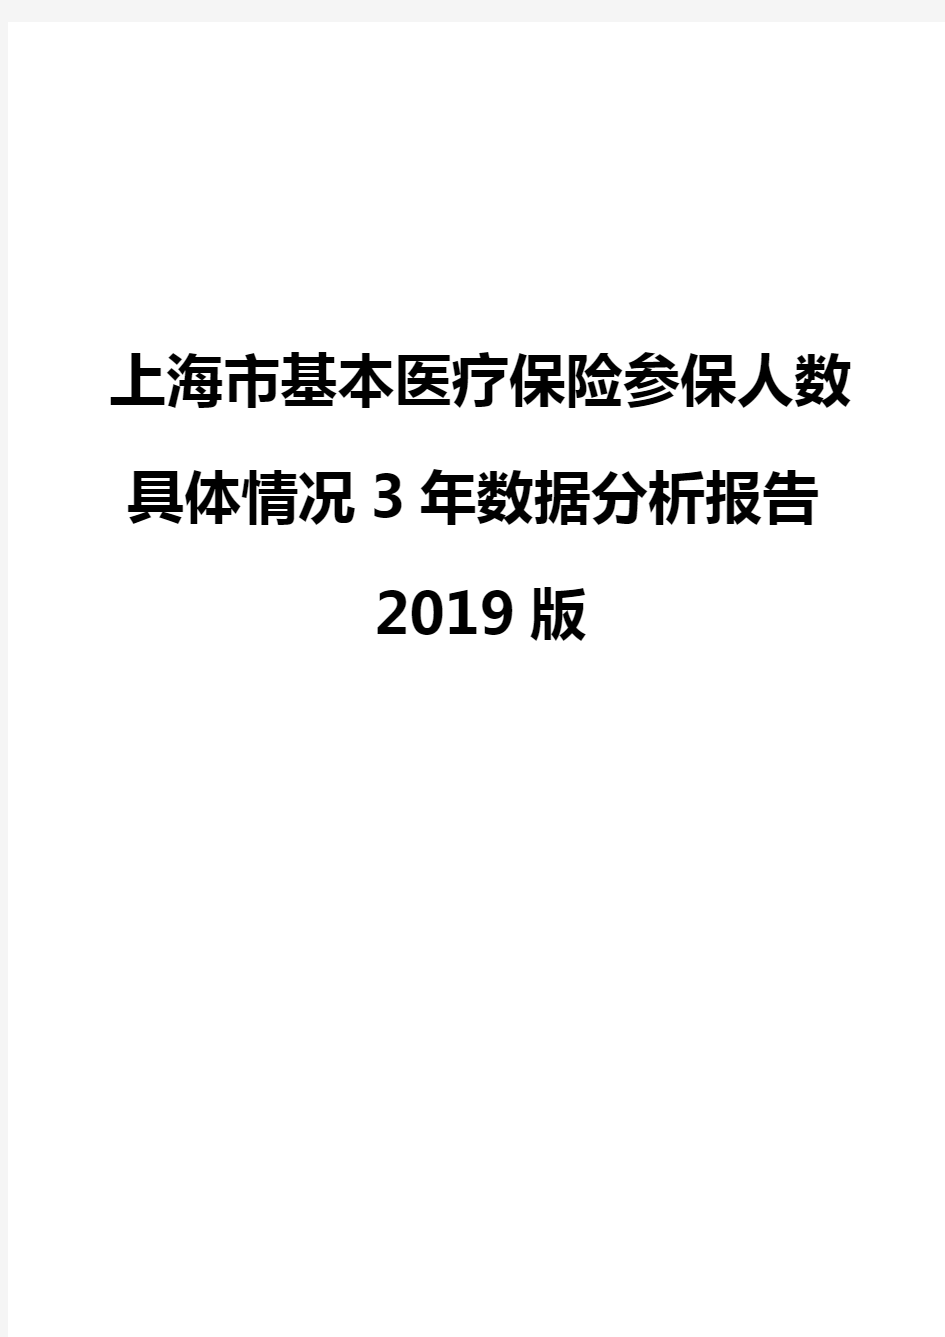 上海市基本医疗保险参保人数具体情况3年数据分析报告2019版